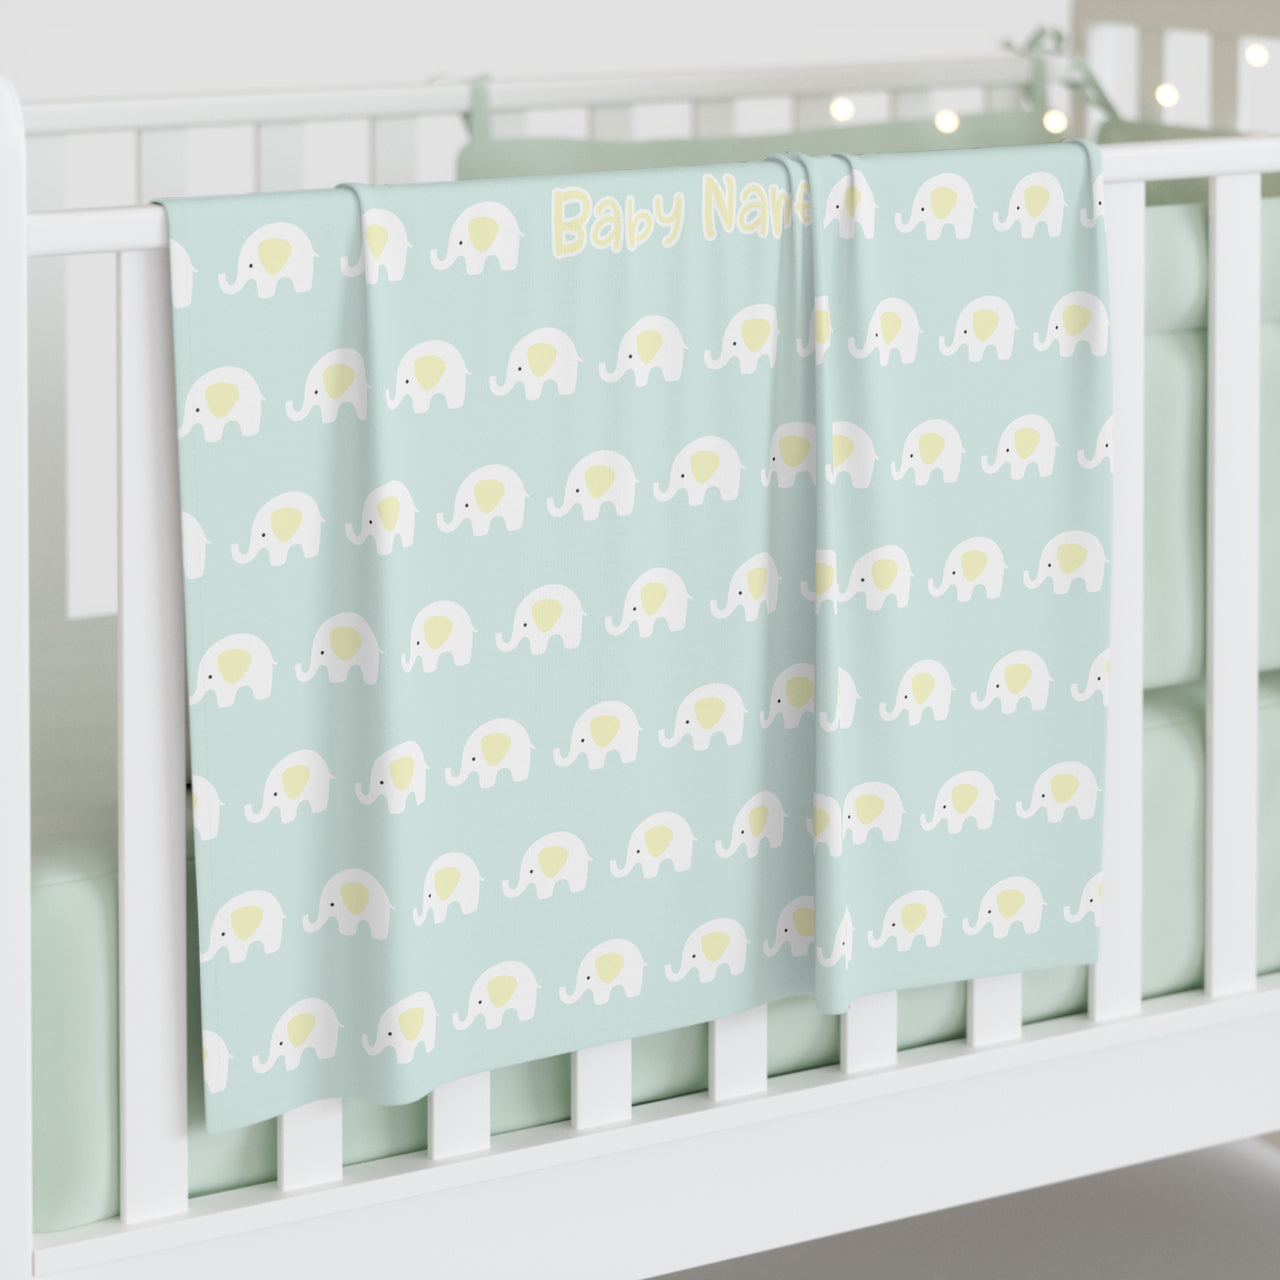 Personalized Cute Baby Unisex Mint Elephants Swaddle Blanket - CHILD DECOR LLC